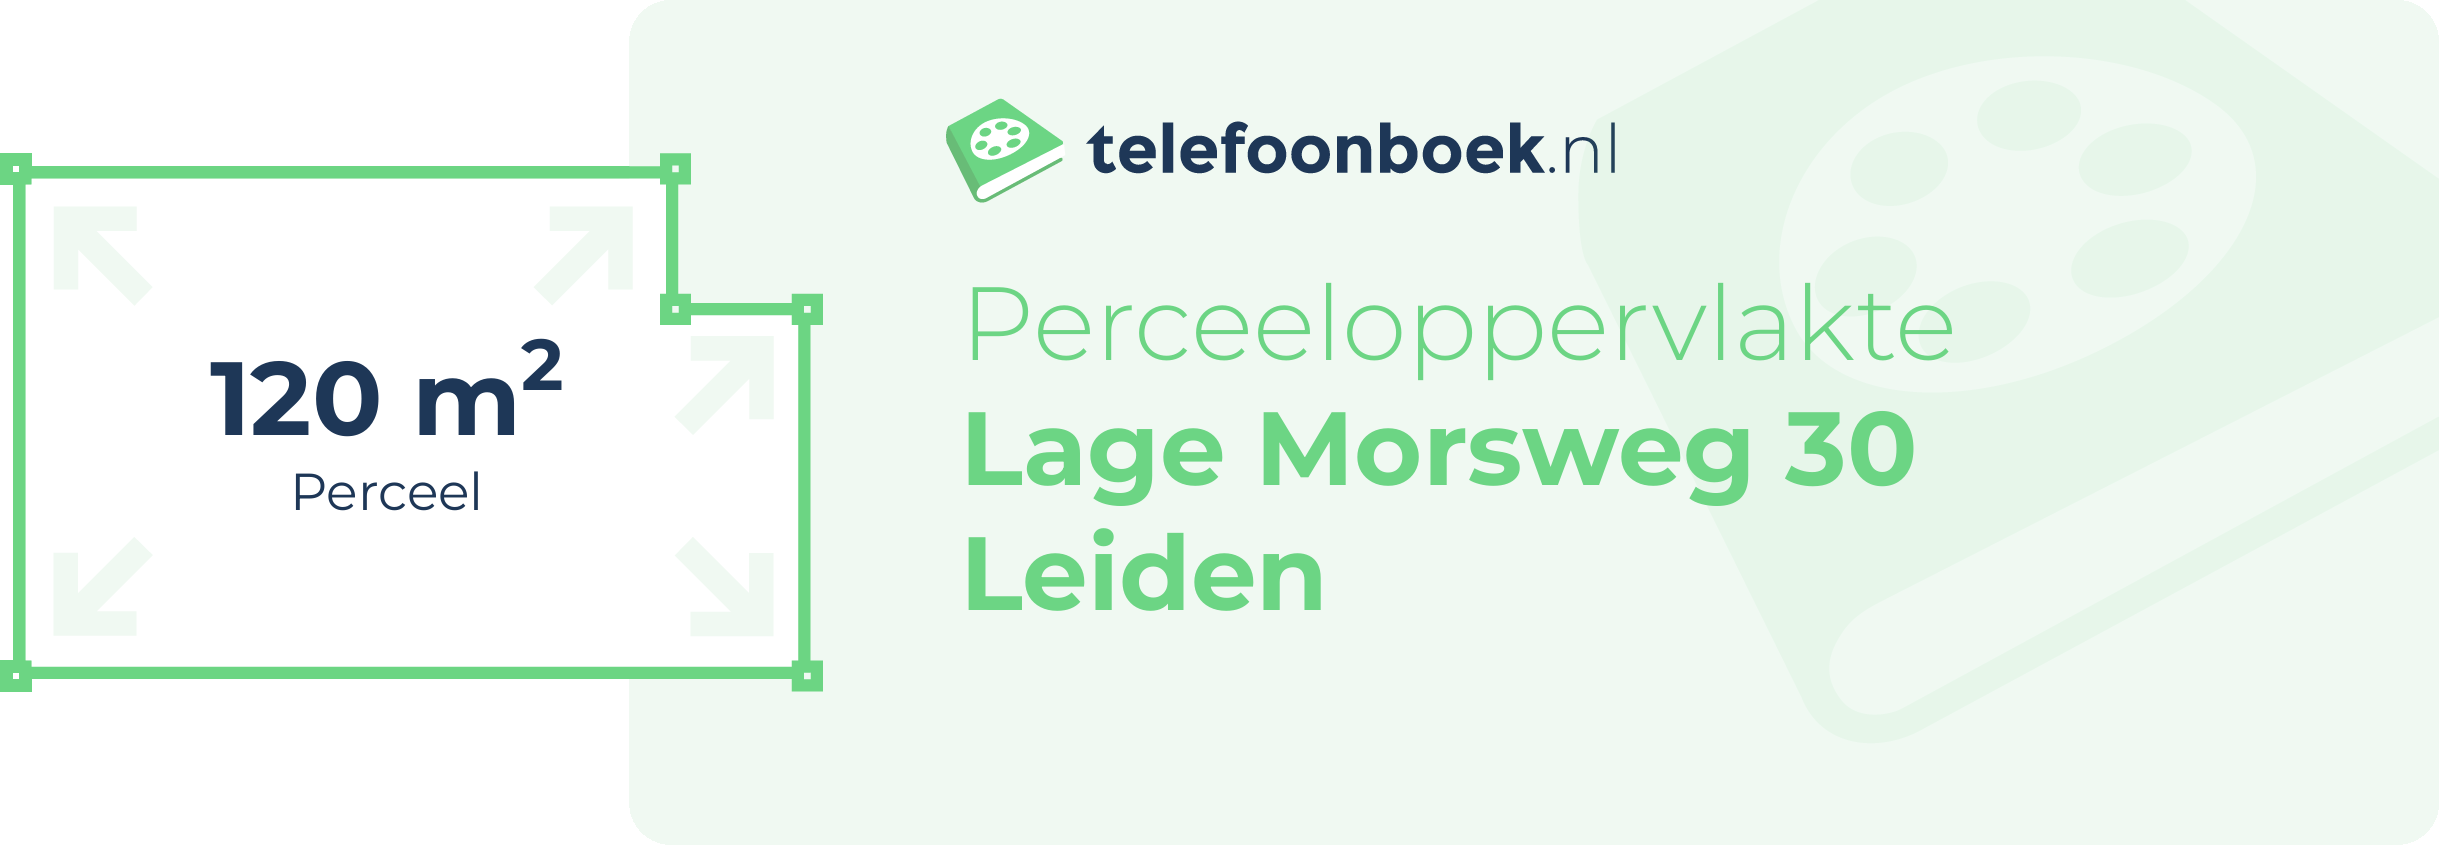 Perceeloppervlakte Lage Morsweg 30 Leiden